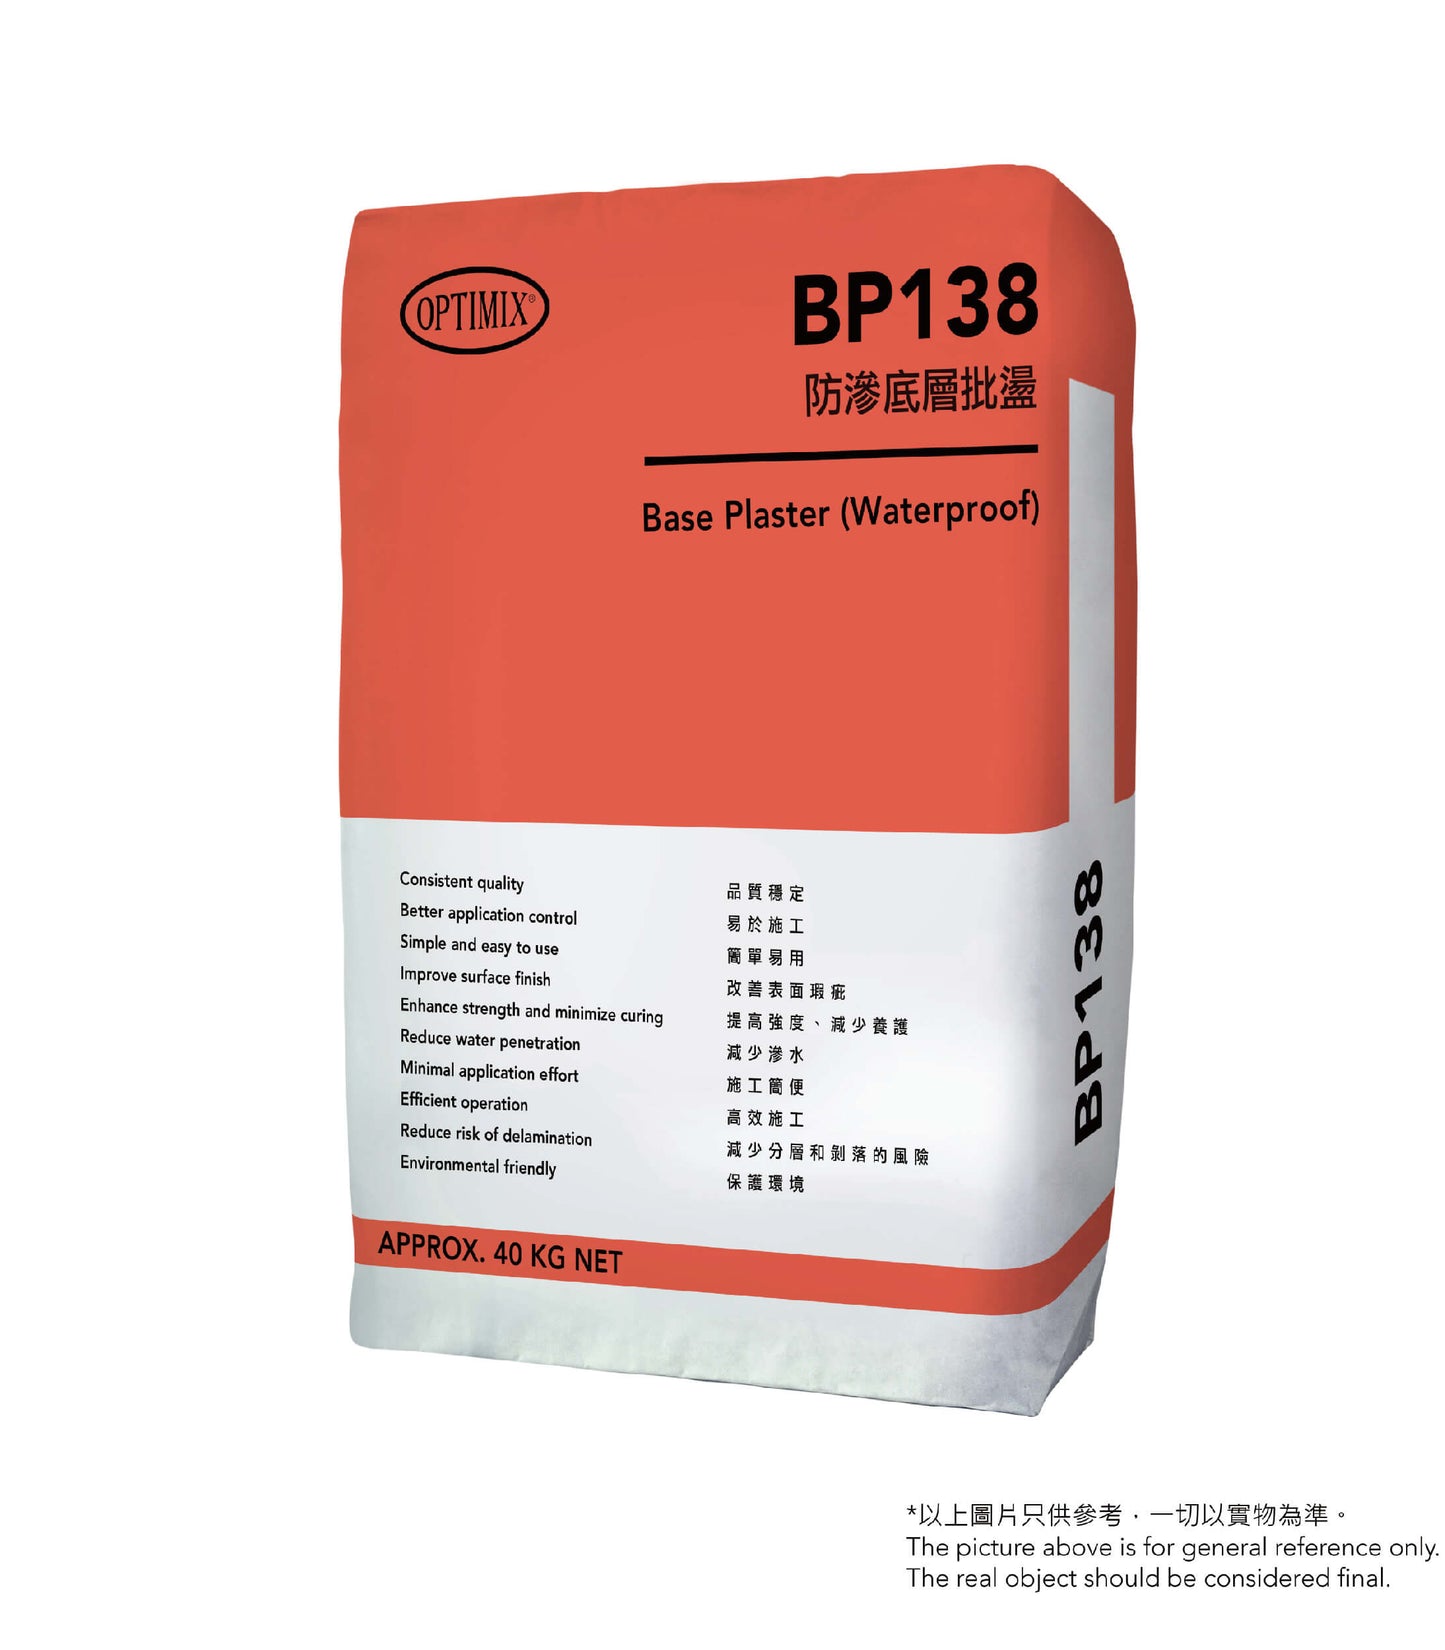 奧迪美 Optimix BP138 Base Plaster (Waterproof) 防滲底層批盪 / 40KG